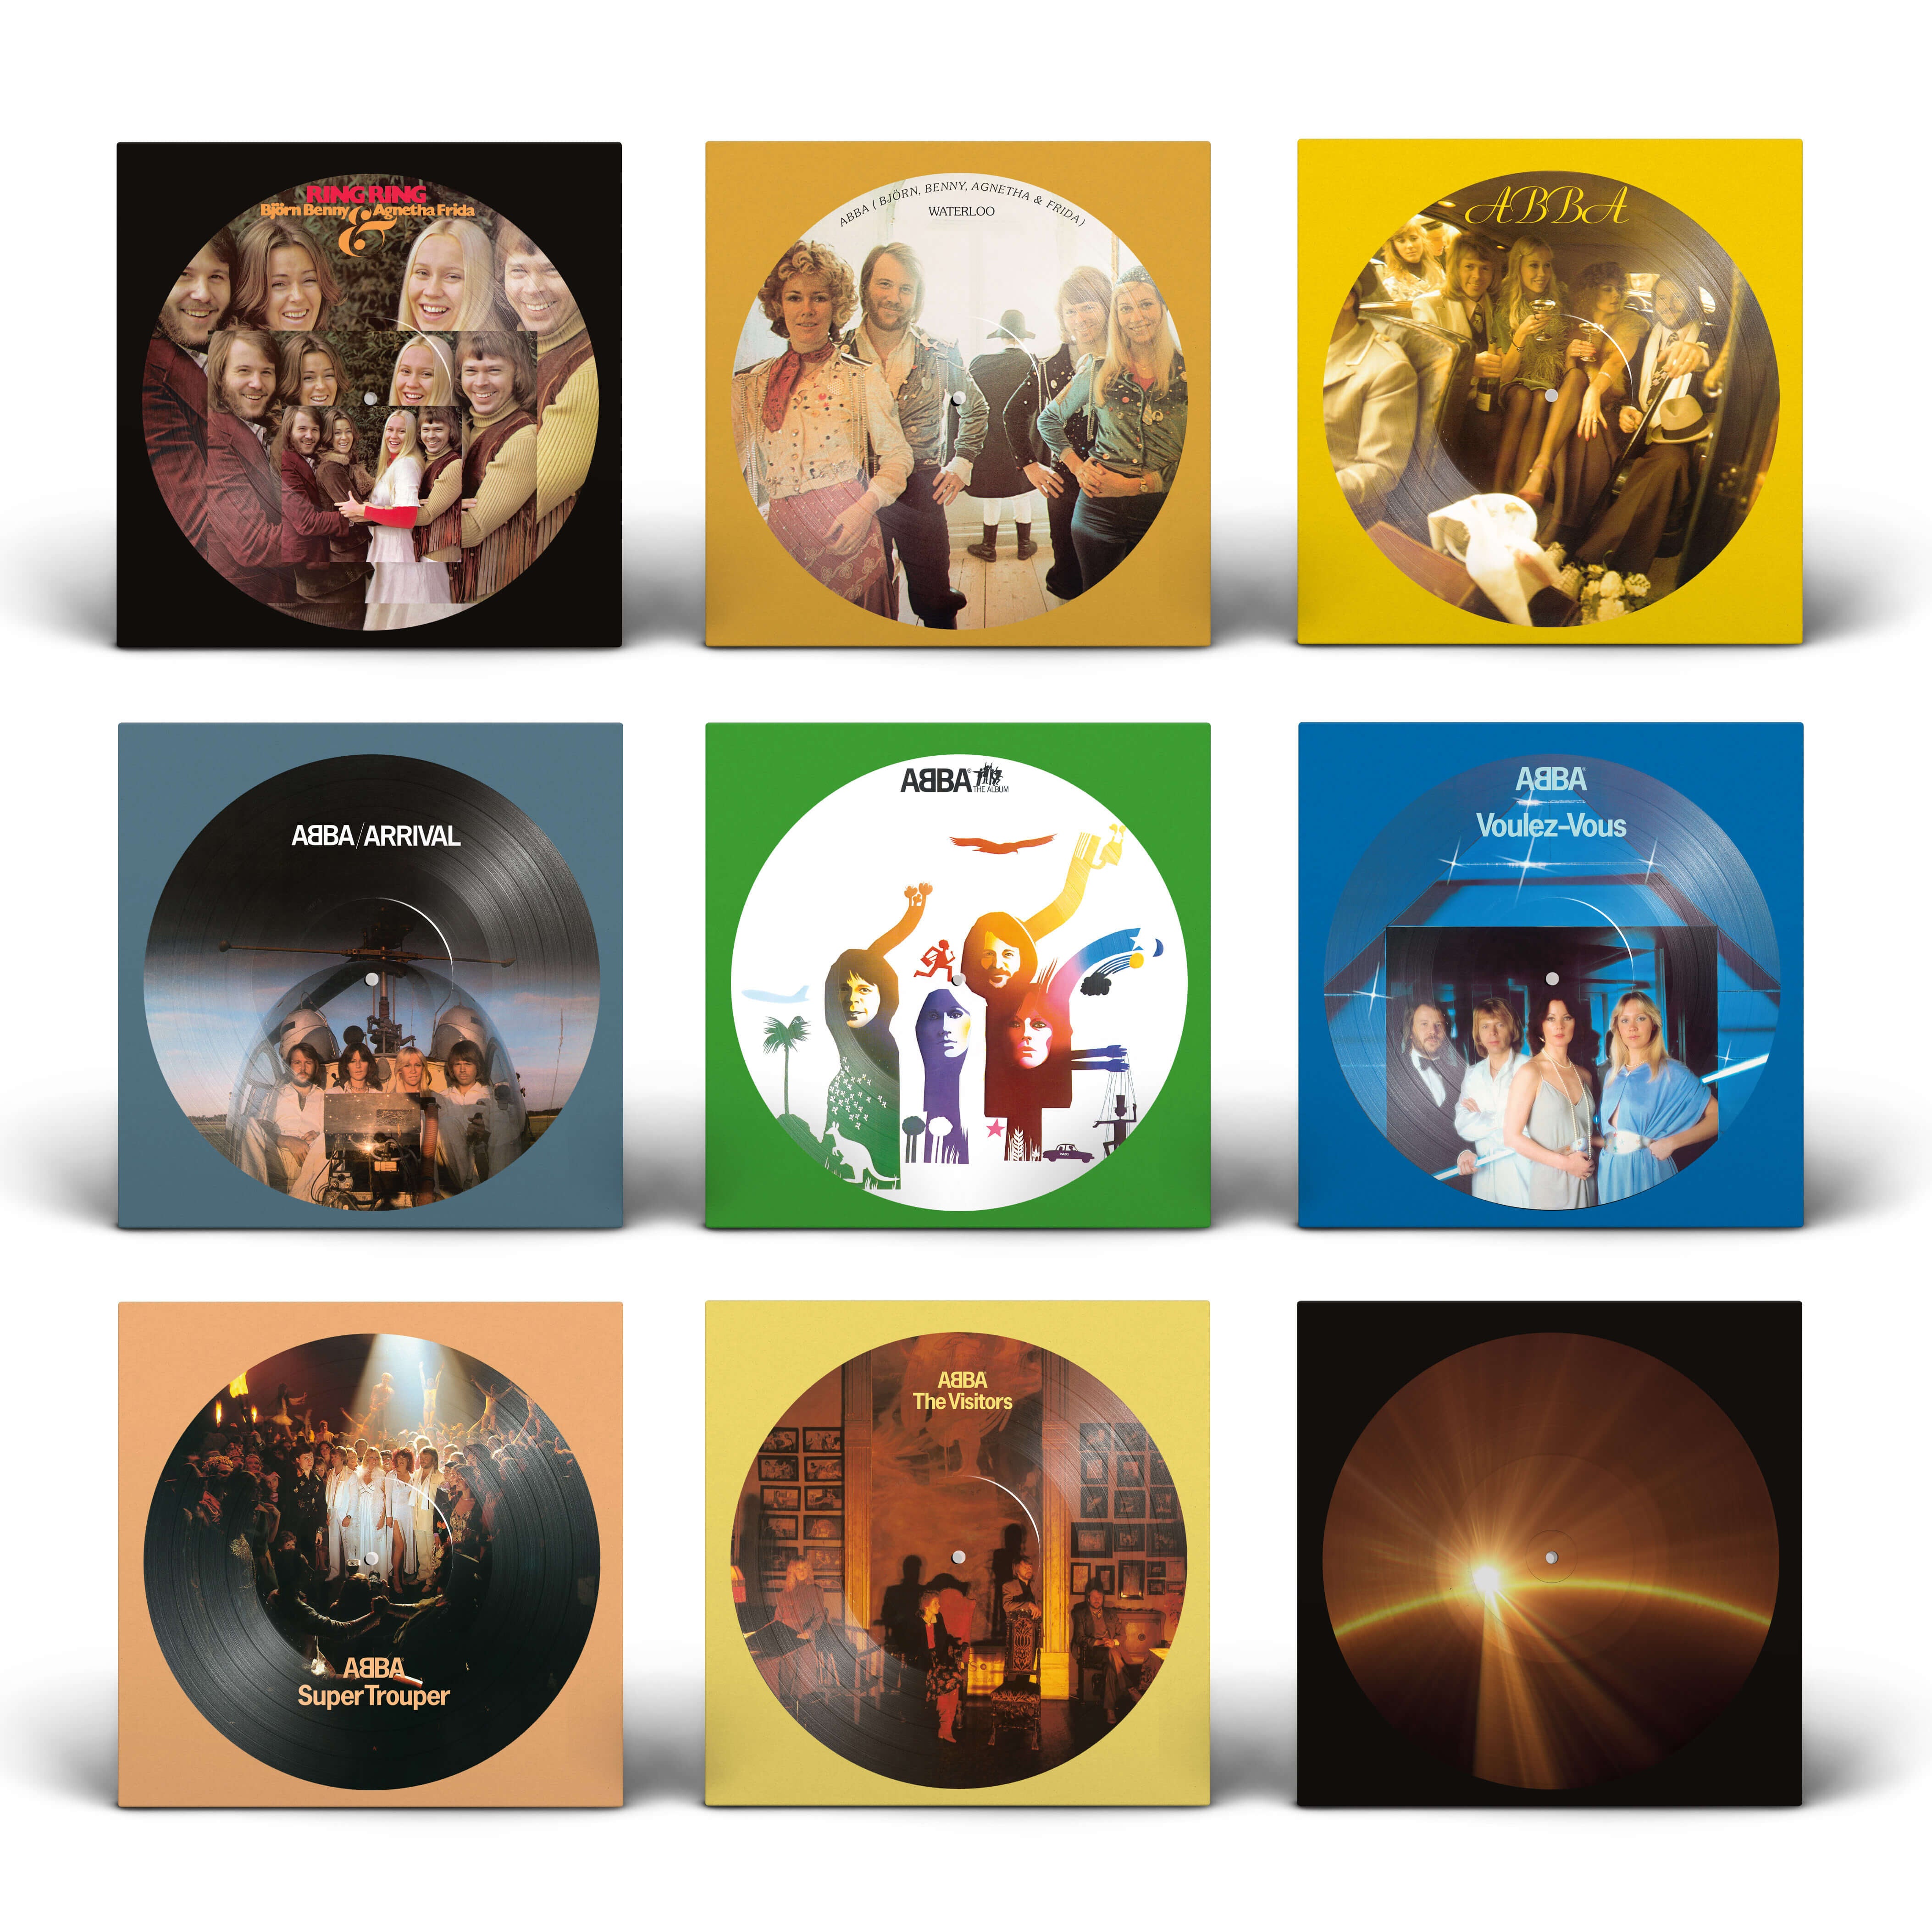 https://images.bravado.de/prod/product-assets/product-asset-data/abba/abba-2/products/141230/web/307279/image-thumb__307279__3000x3000_original/ABBA-ABBA-The-Vinyl-Collection-Vinyl-Bundle-zu-bundeln-Album-141230-307279.e261376d.jpg